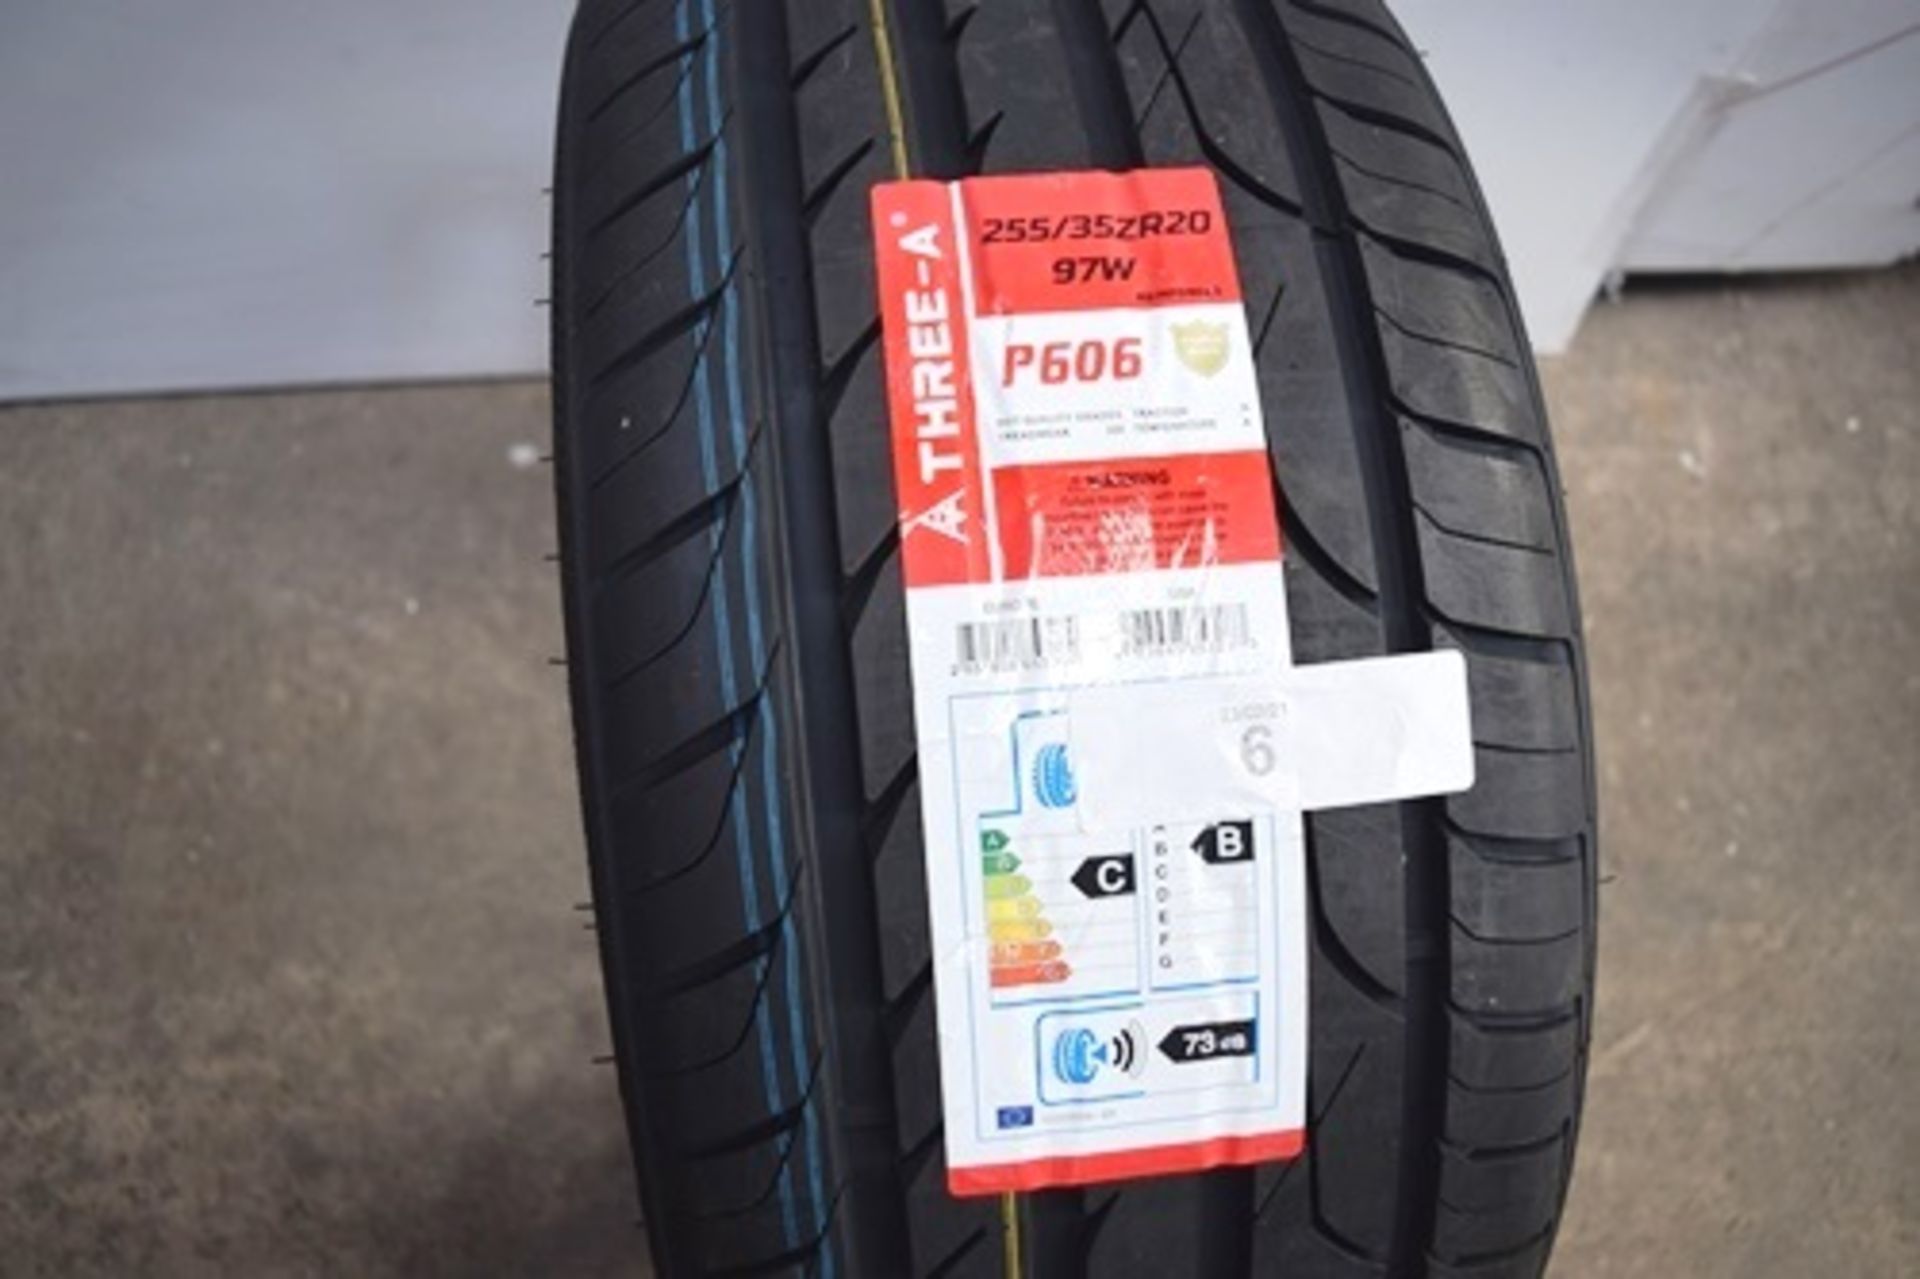 1 x A-Three-A P606 tyre, size 255/35ZR20 97W - New with label (GS1)